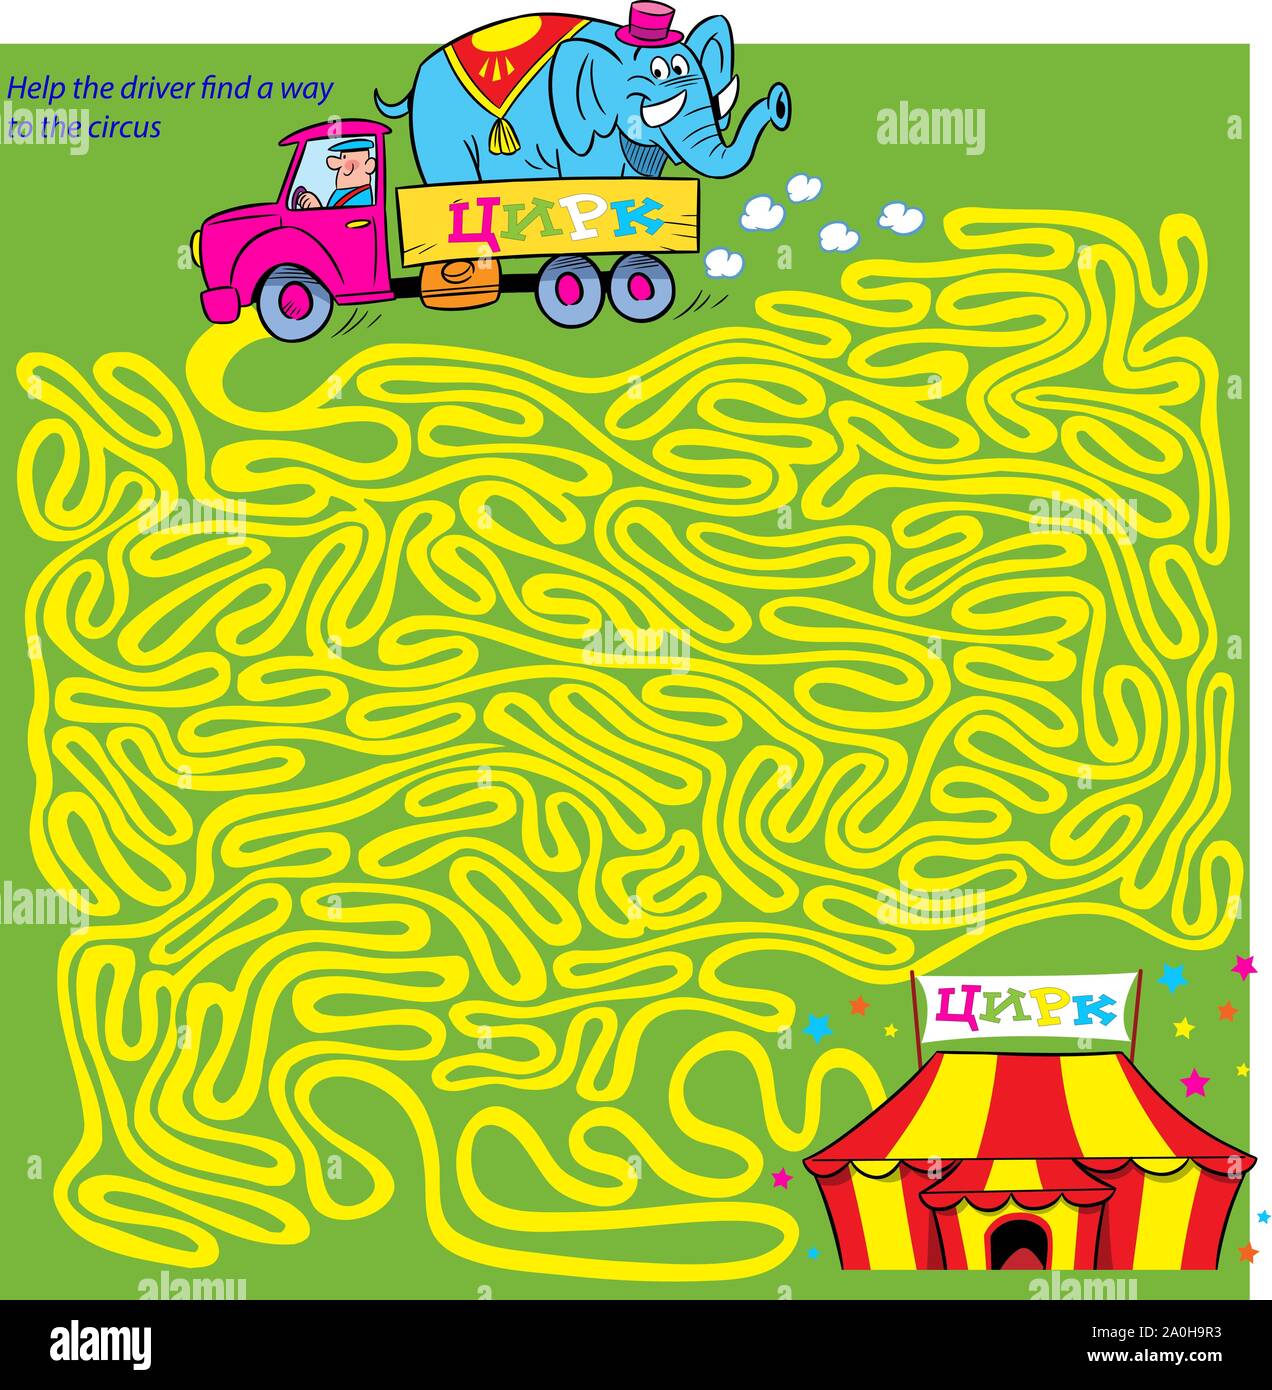 Puzzle Labyrinth, wo es notwendig ist, den Fahrer zu helfen, einen Weg zu finden, den Zirkus. Stock Vektor